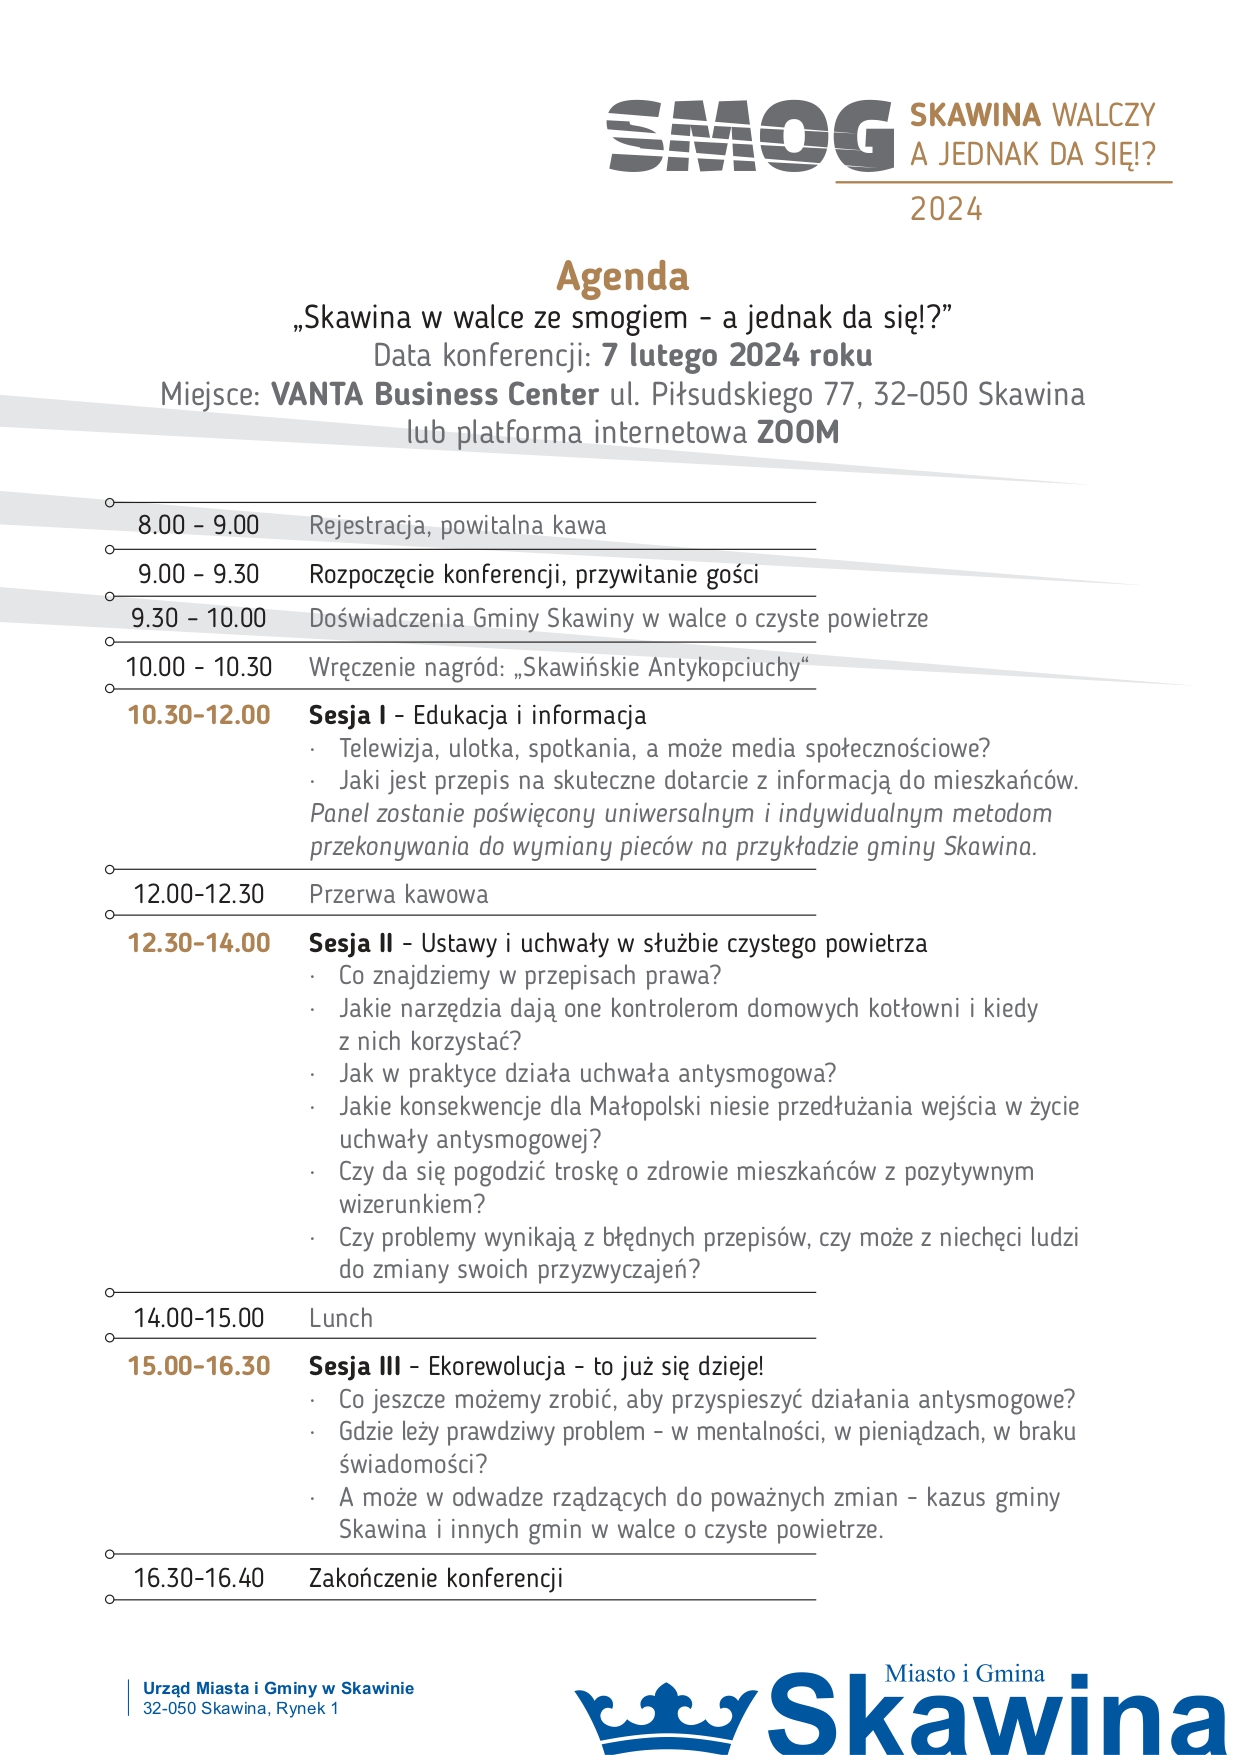 Agenda konferencji SMOG w Skawinie, 7 lutego 2024. Pełna treść z grafiki znajduje się w załączniku poniżej.